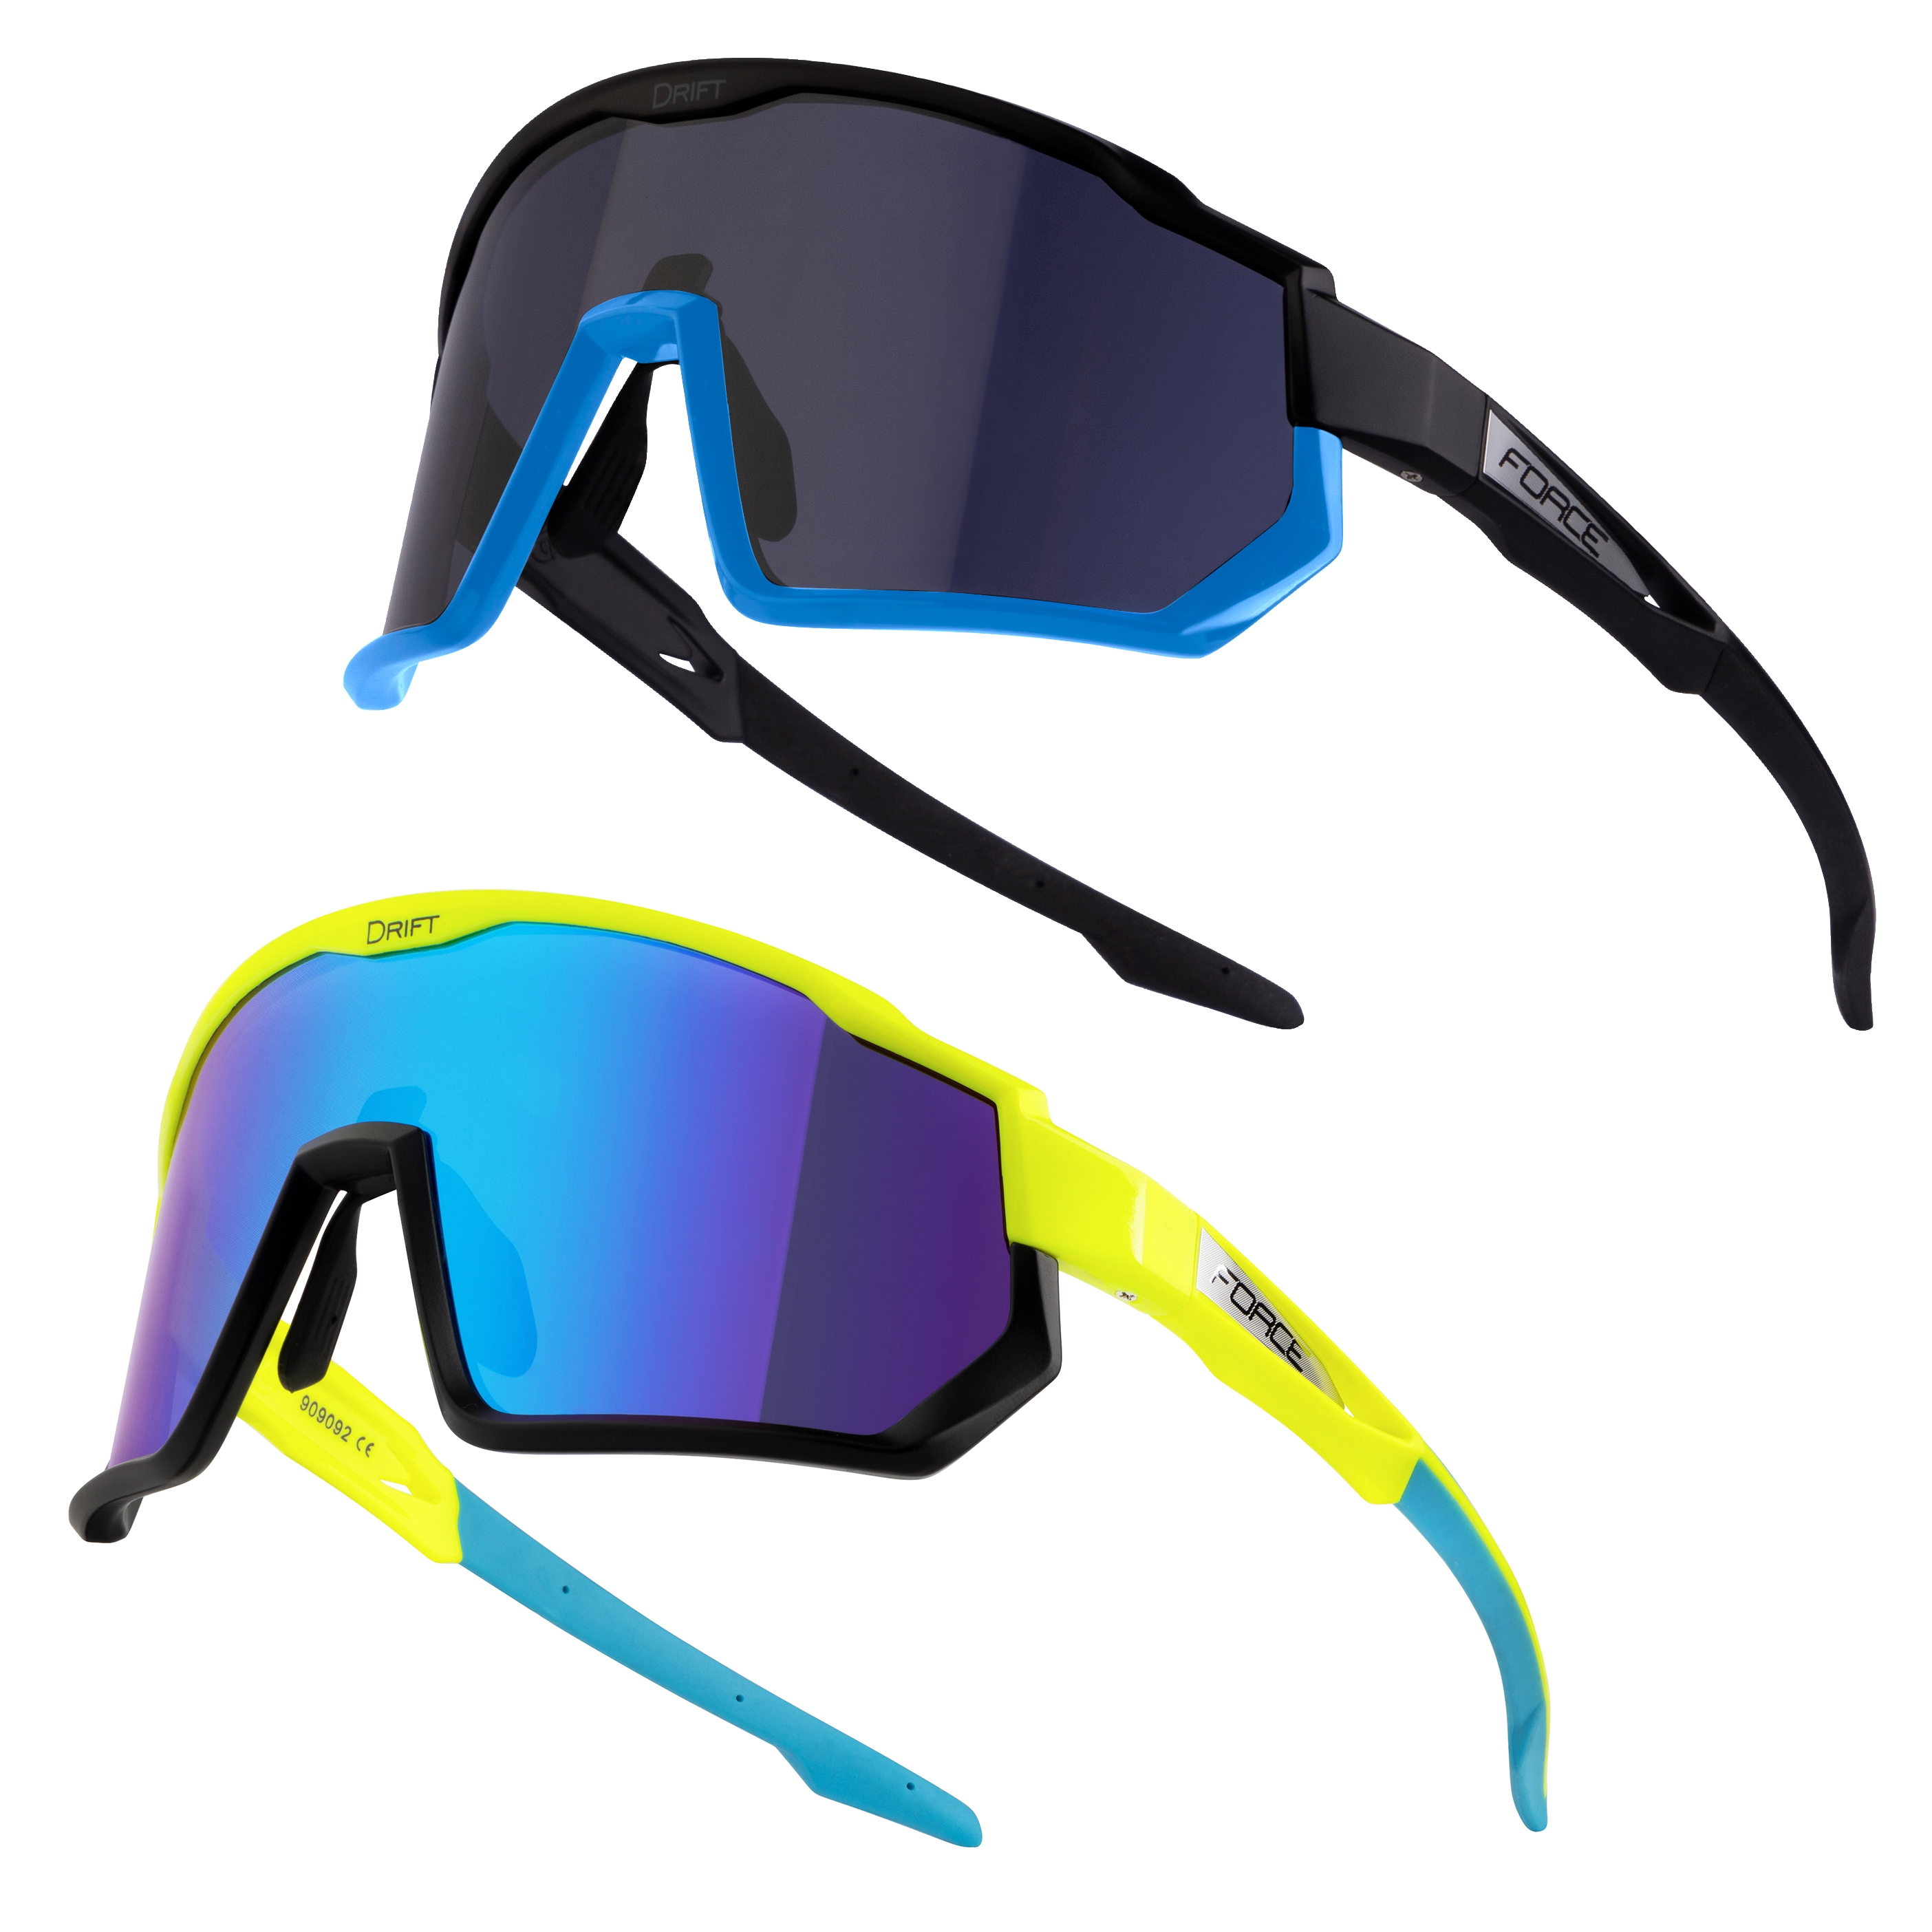 FORCE brýle F DRIFT 1x fluo+1x černé,kontrast+černé SADA Barva: Fluo, určení: cyklistické, skla: kontrastní